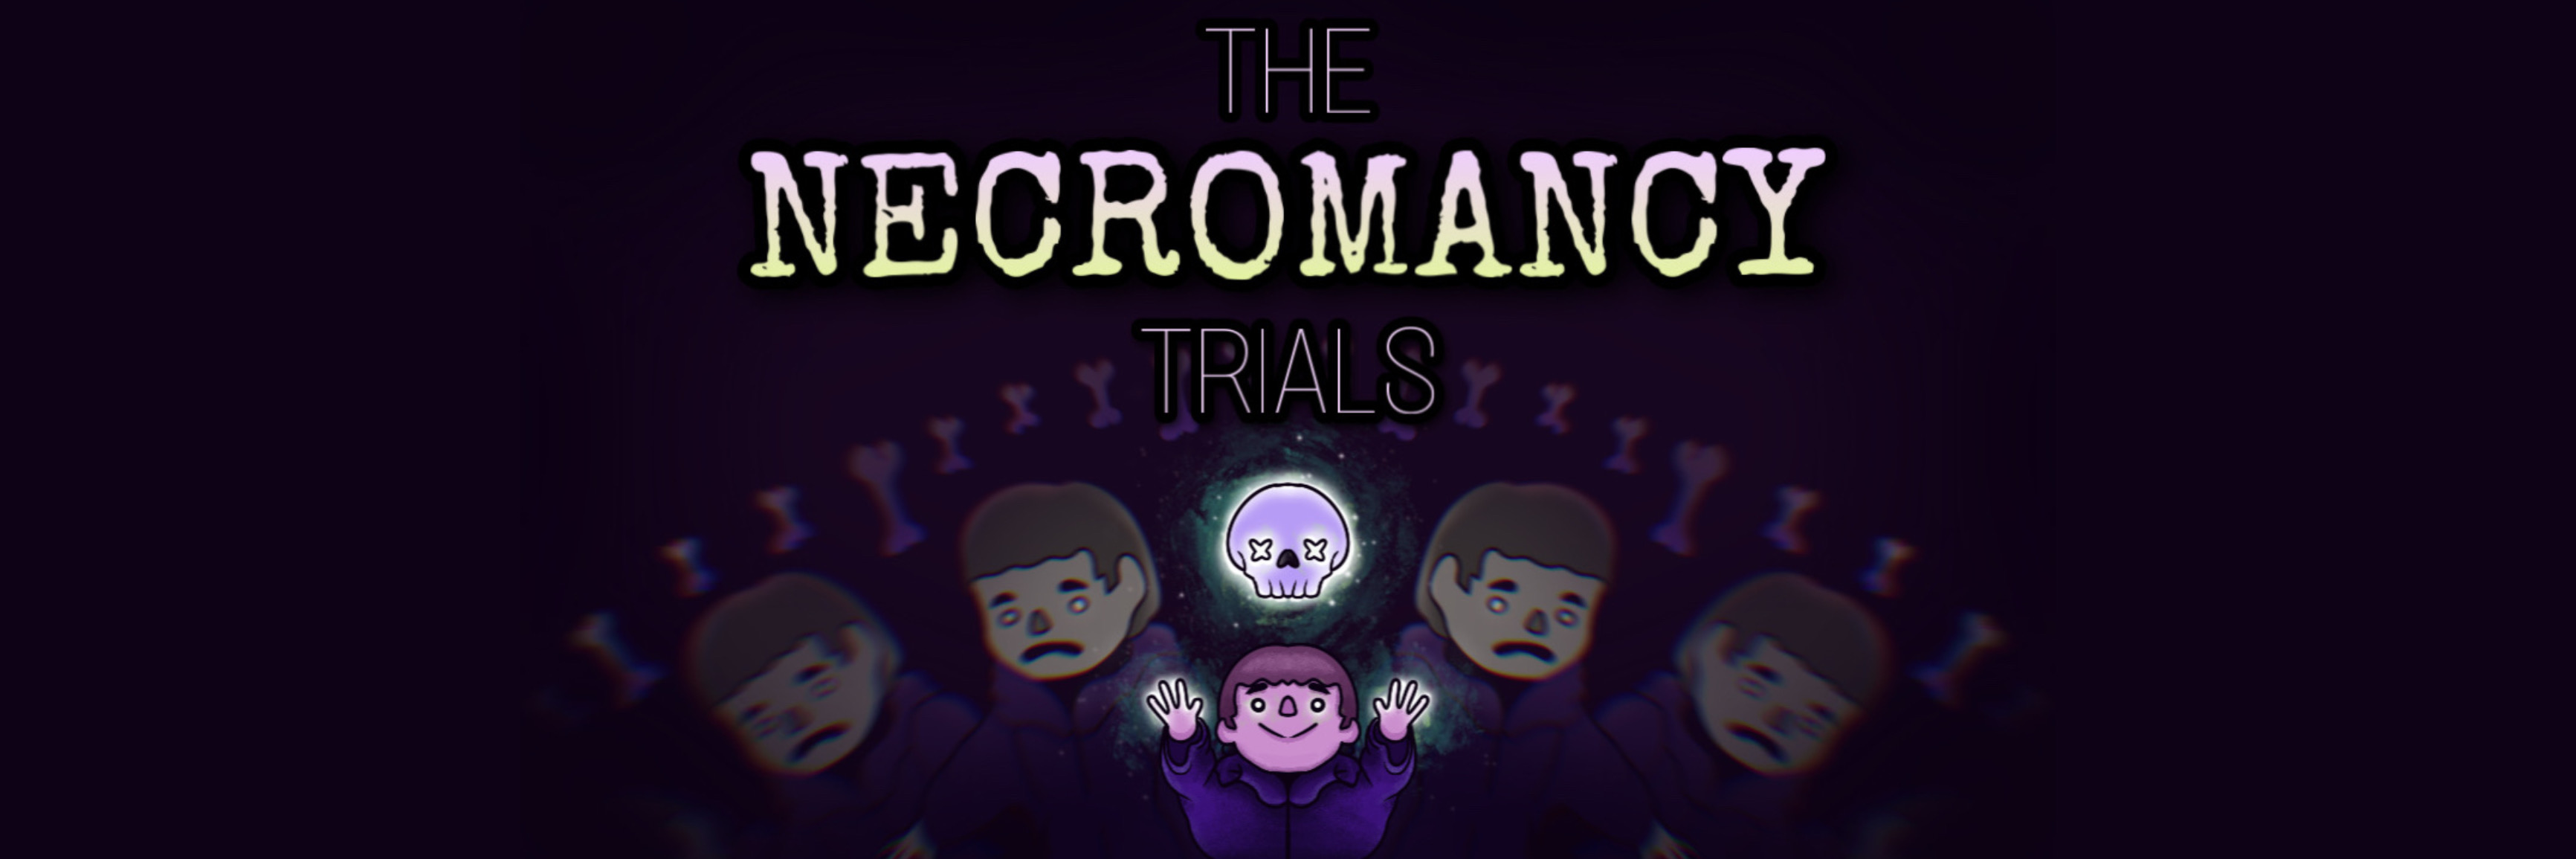 The Necromancy Trials